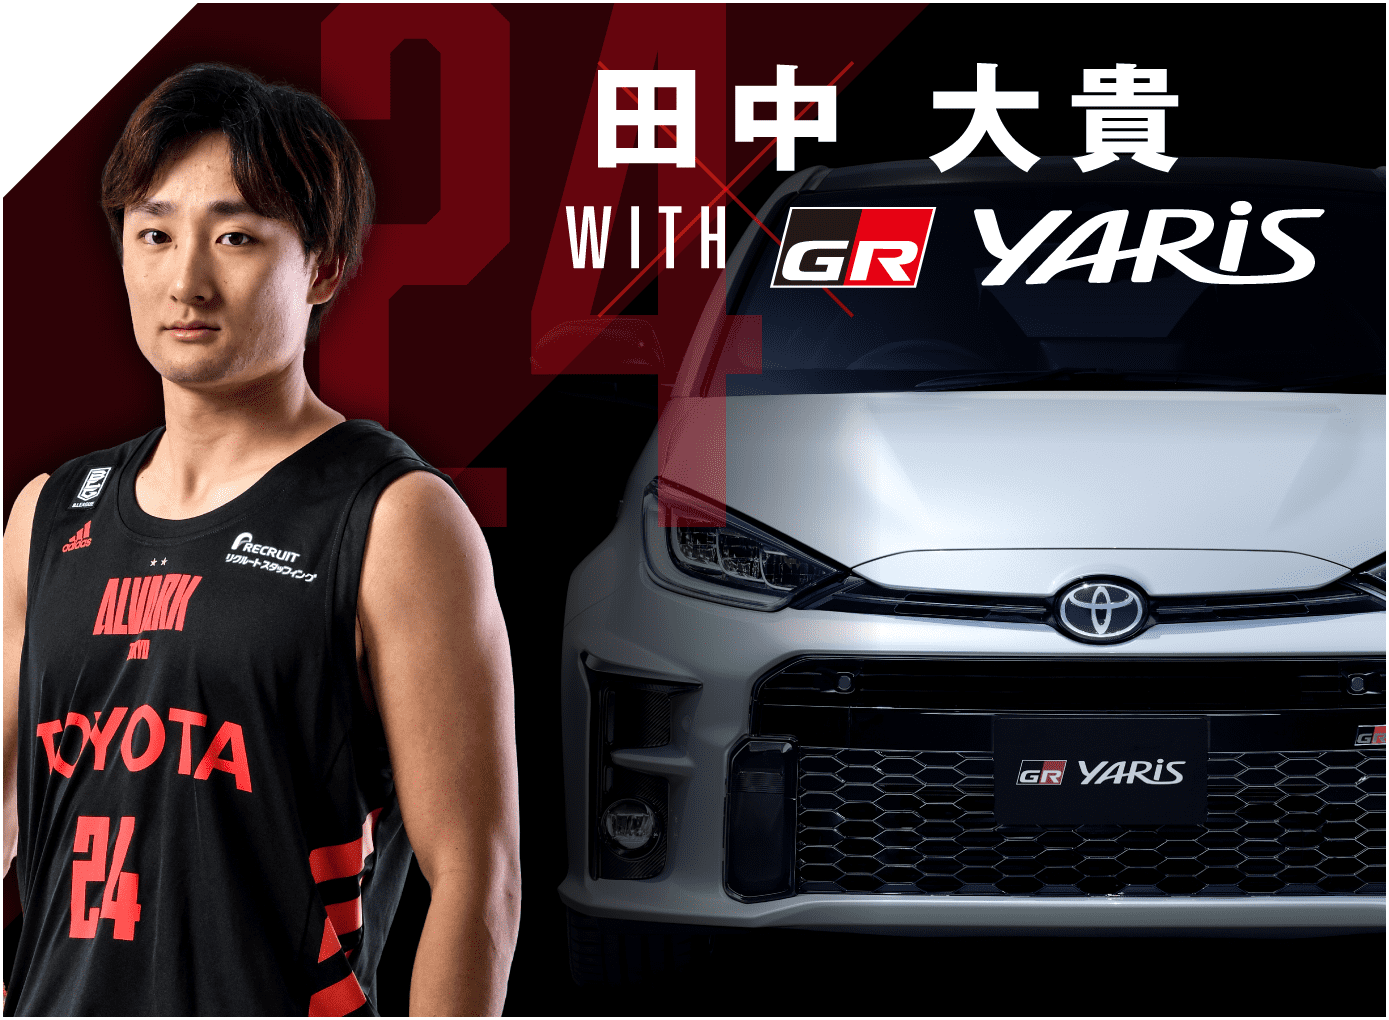 田中大貴 with GR YARIS